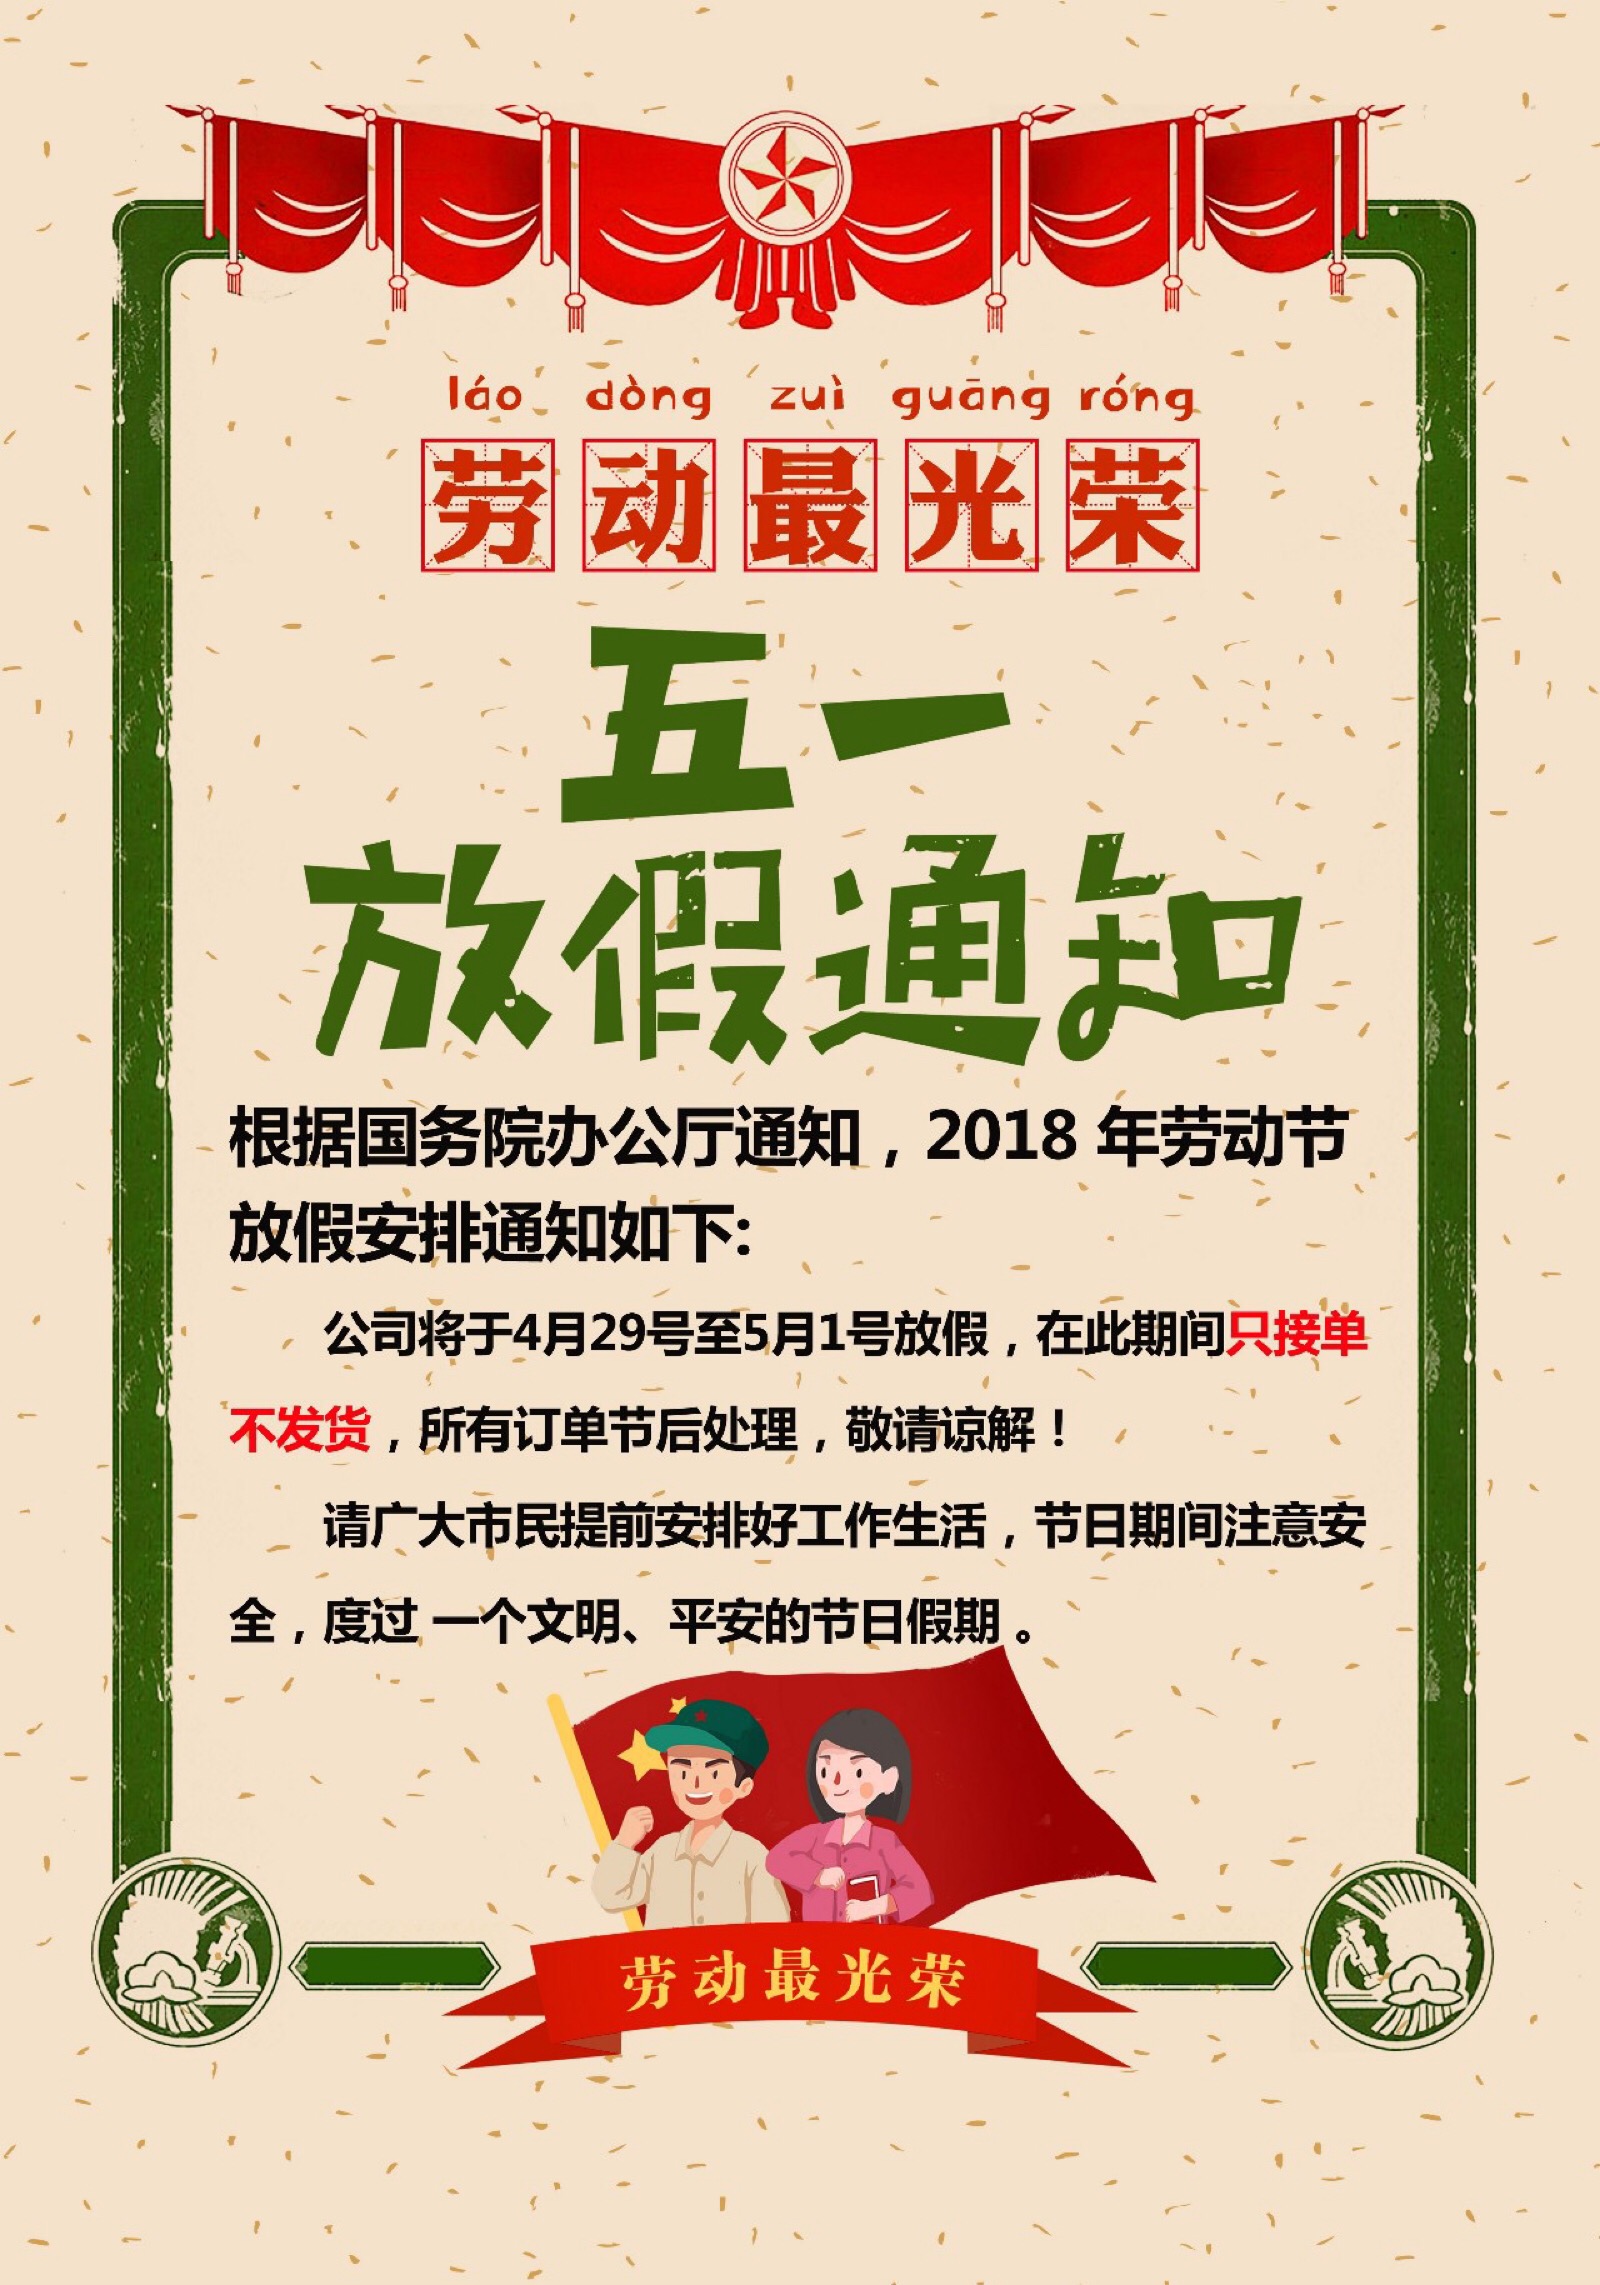 【五一劳动节】军帽 红旗 放假通知 公司推送 海报